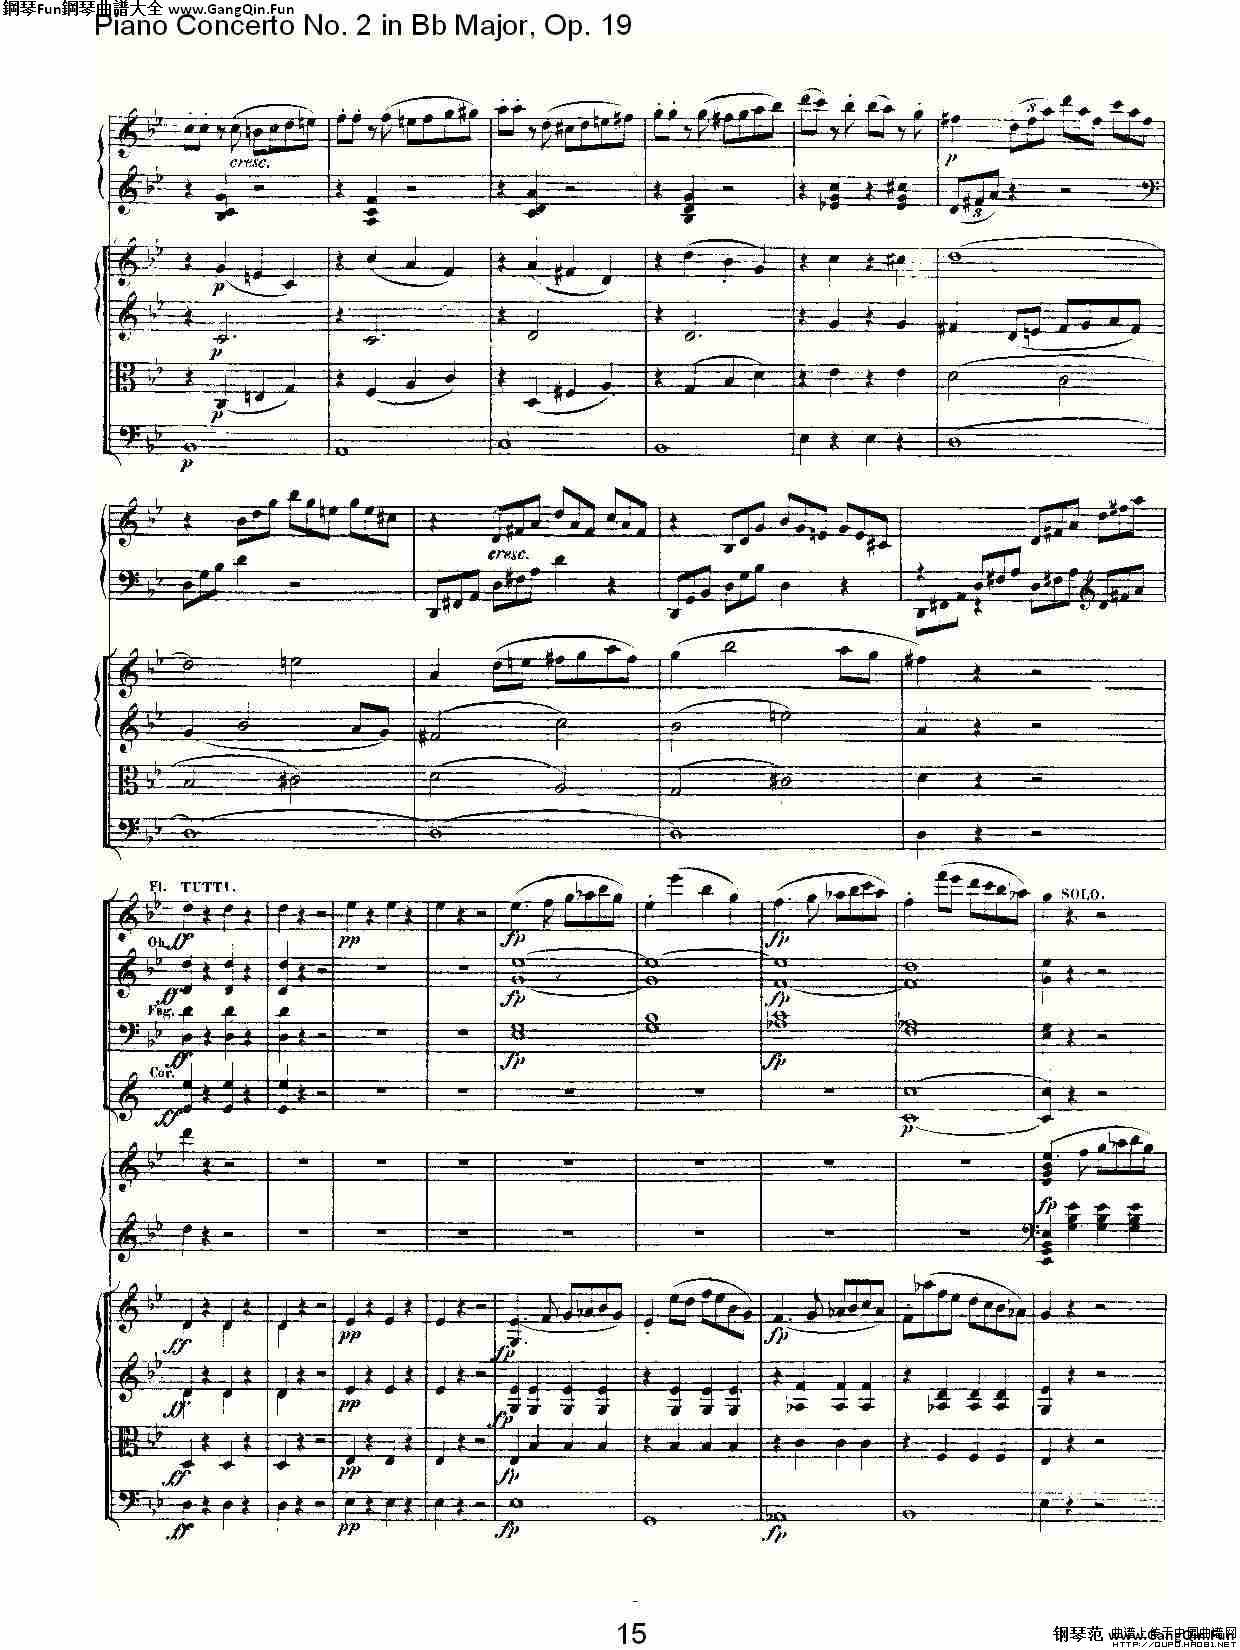 Bb大調鋼琴第二協奏曲 Op. 19 第一樂章_簡譜